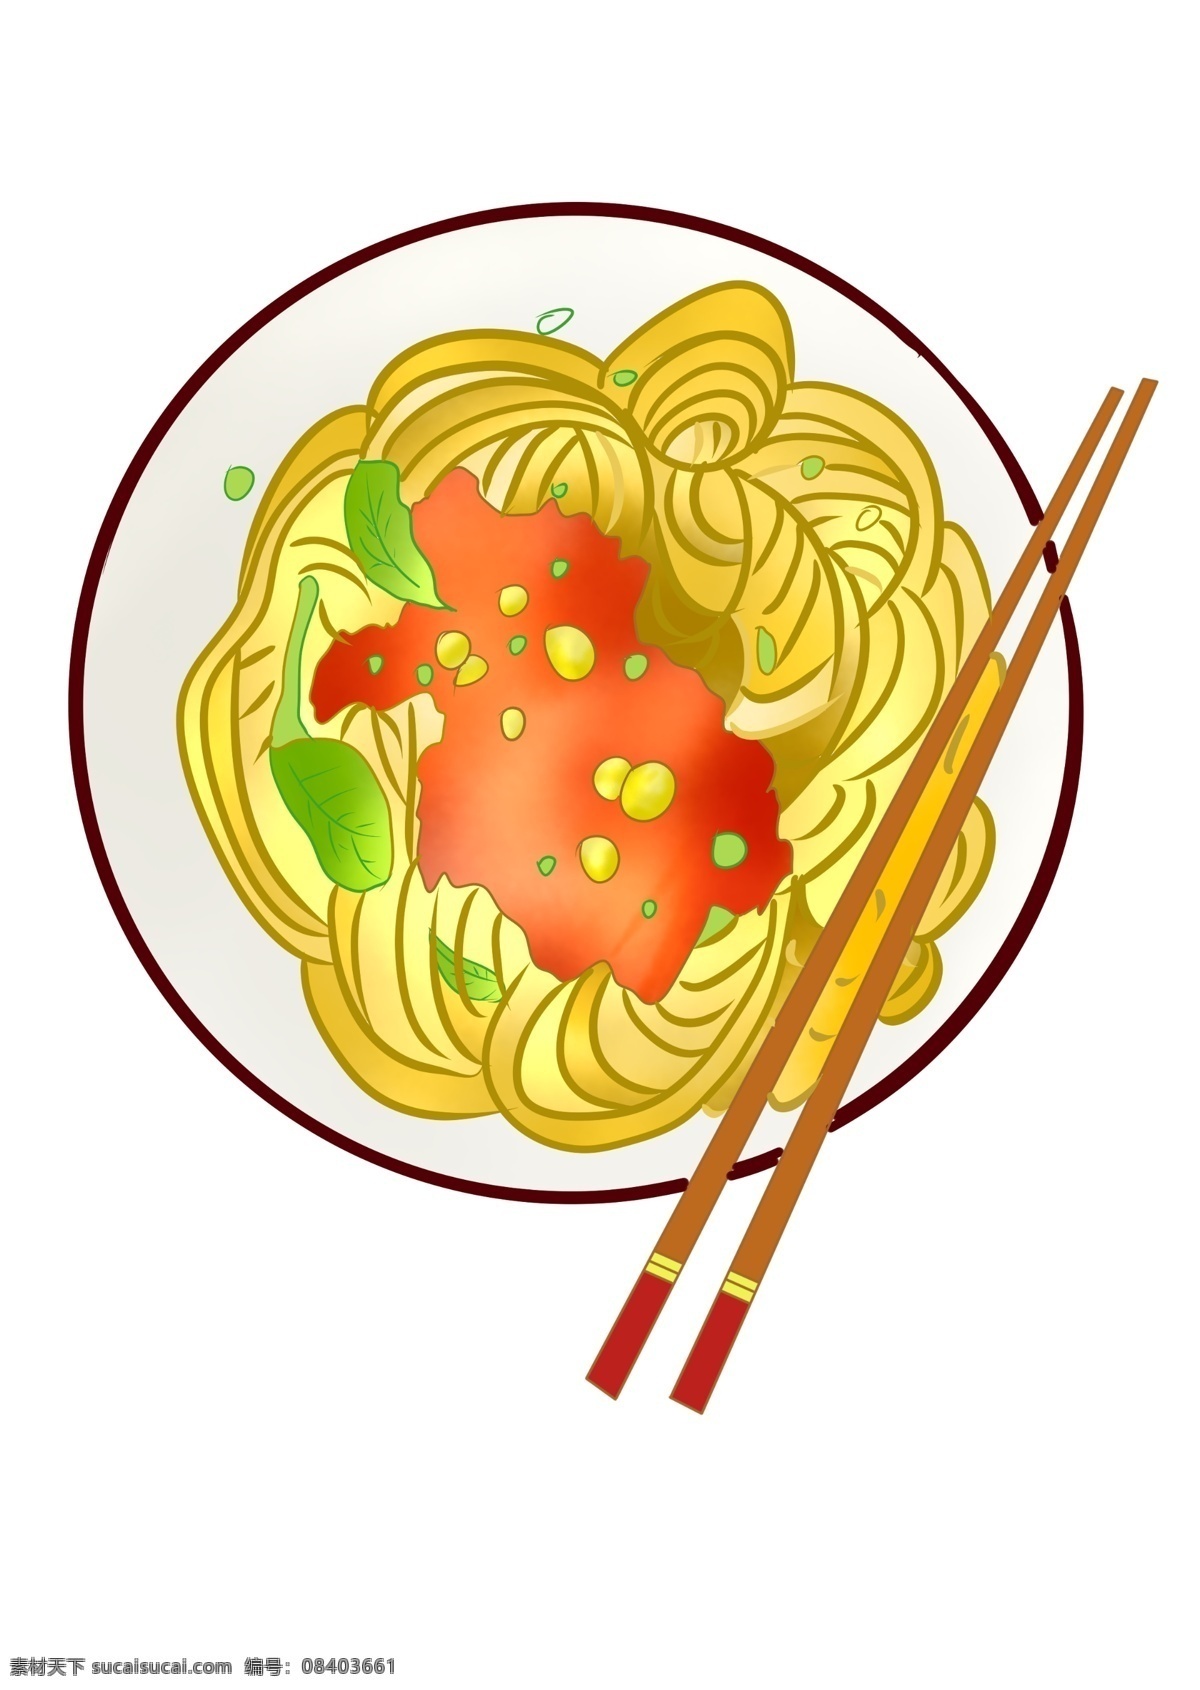 美味 番茄 面条 插画 美味的面条 番茄的面条 卡通插画 面条插画 面食插画 食物插画 食品插画